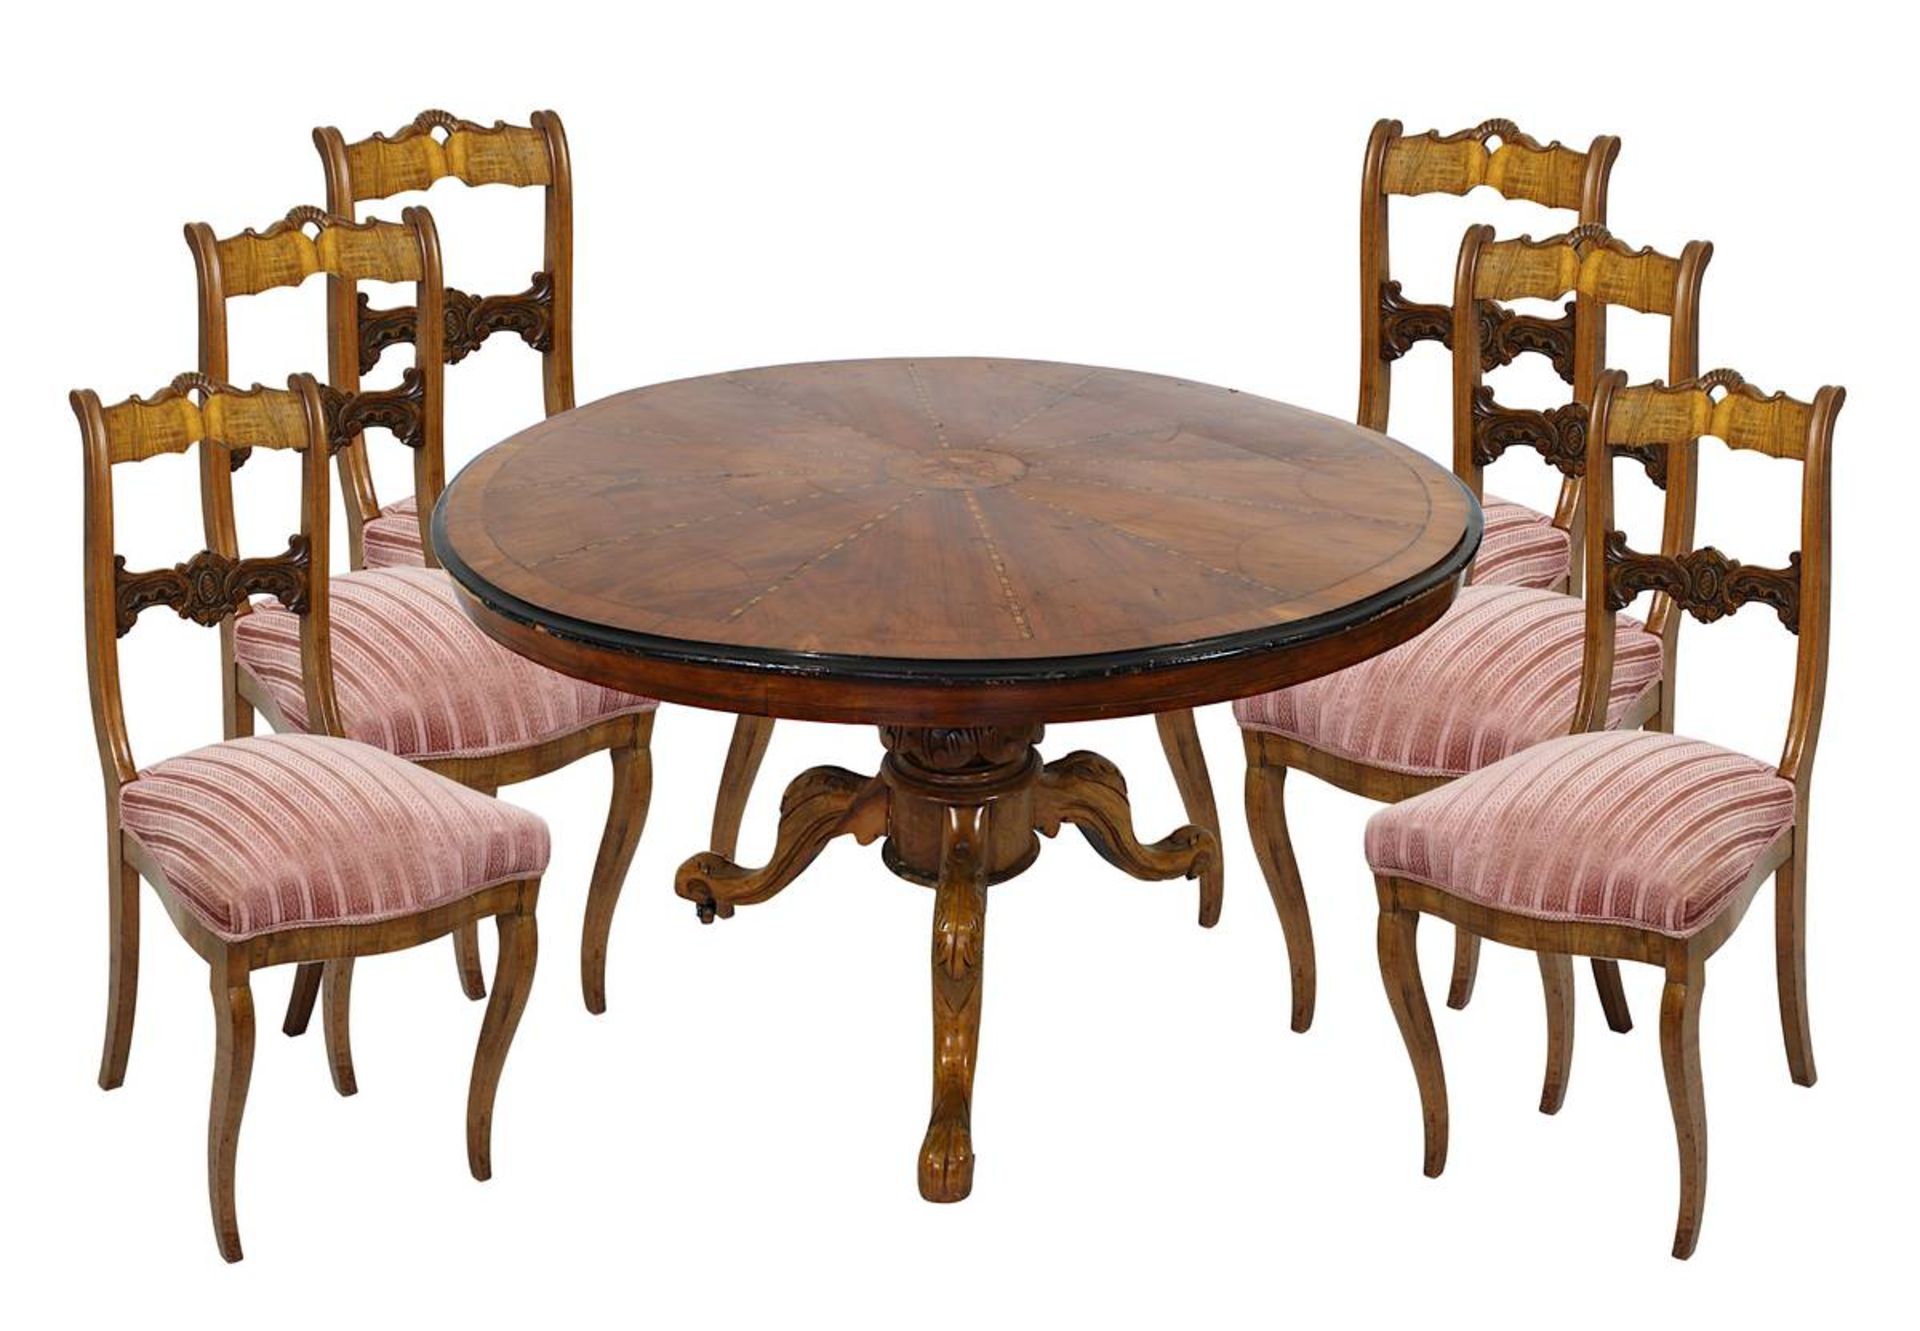 Runder Tisch mit 6 Stühlen, Spät-Biedermeier, wohl Österreich um 1840, Nussholz massv u. furniert,